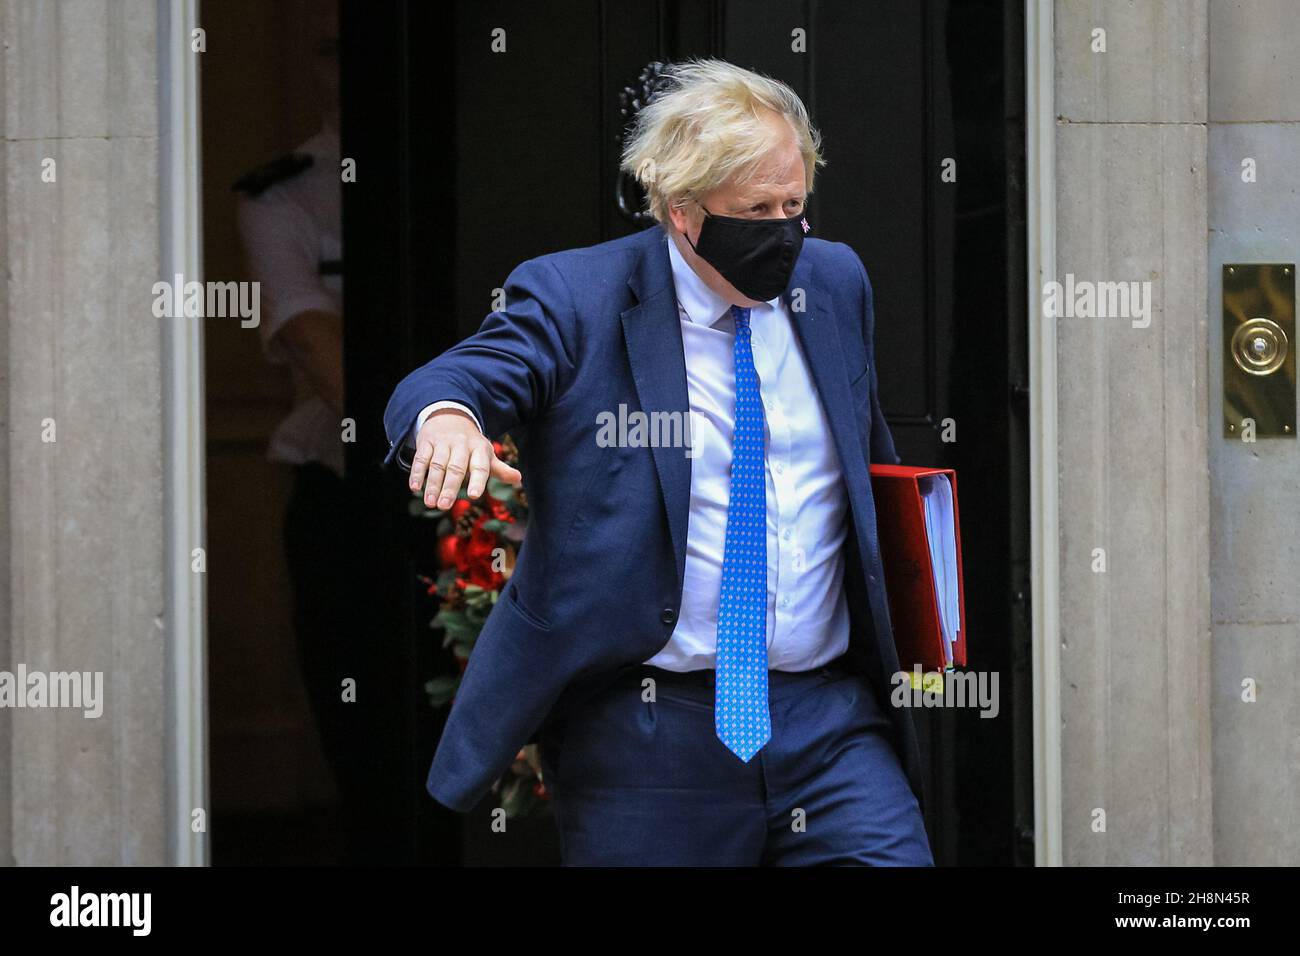 Westminster, Londra, Regno Unito. 01 dicembre 2021. Il primo ministro britannico Boris Johnson lascia 10 Downing Street per le domande del primo ministro (PMQ's) in Parlamento credito: Imagplotter/Alamy Live News Foto Stock